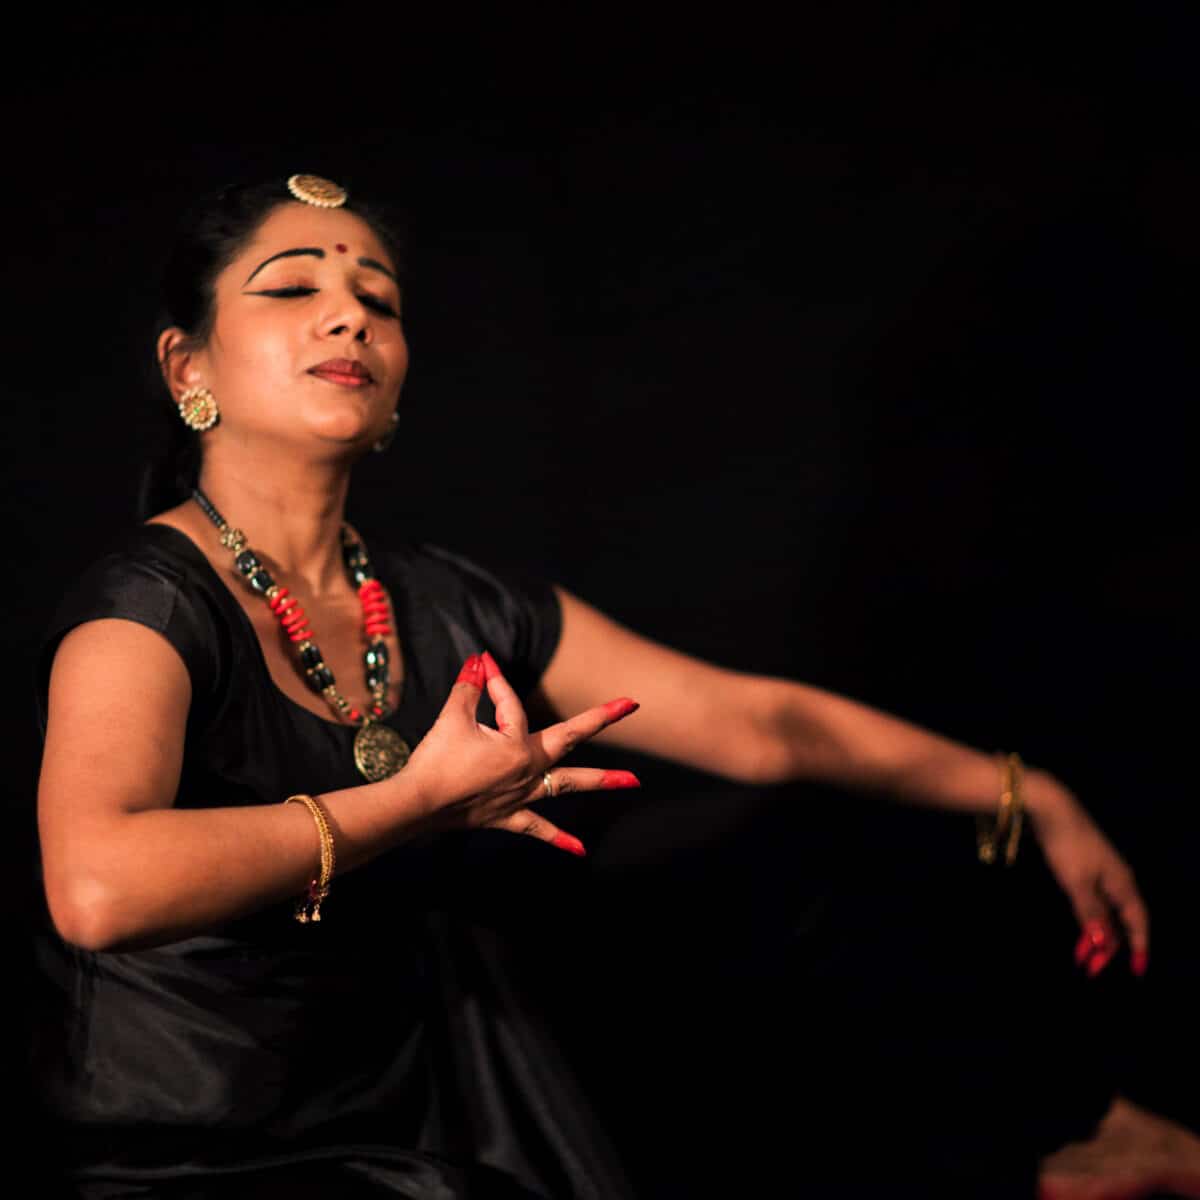 Melaninrik kvinne i sorte klær danser tradisjonsrik tamilsk dans med øynene lukket. Fotografi.